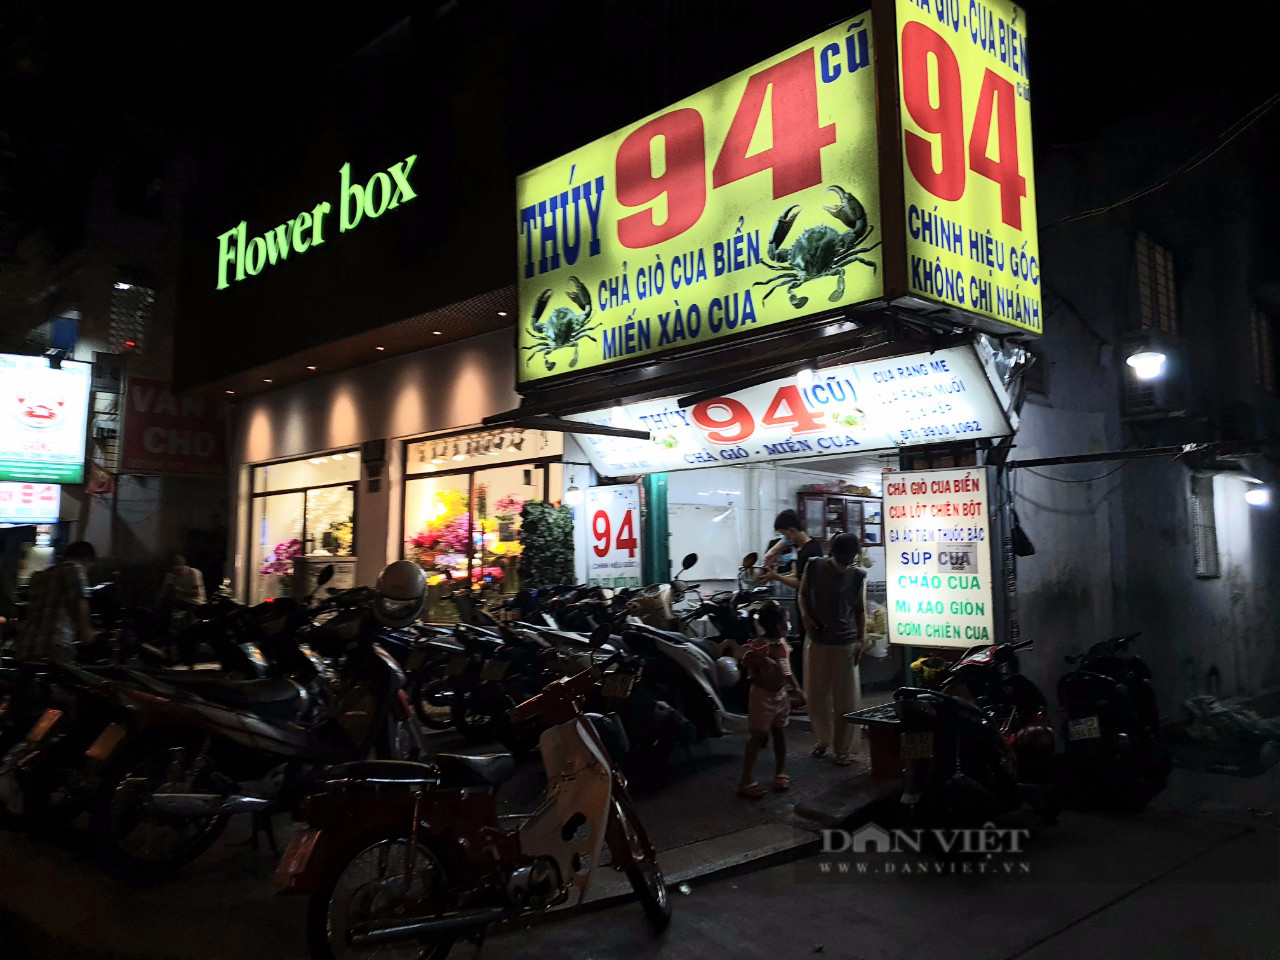 Quán chả giò, miến cua nổi tiếng ở trung tâm Sài Gòn, có đặc sản cua lột nổi như cồn - 4